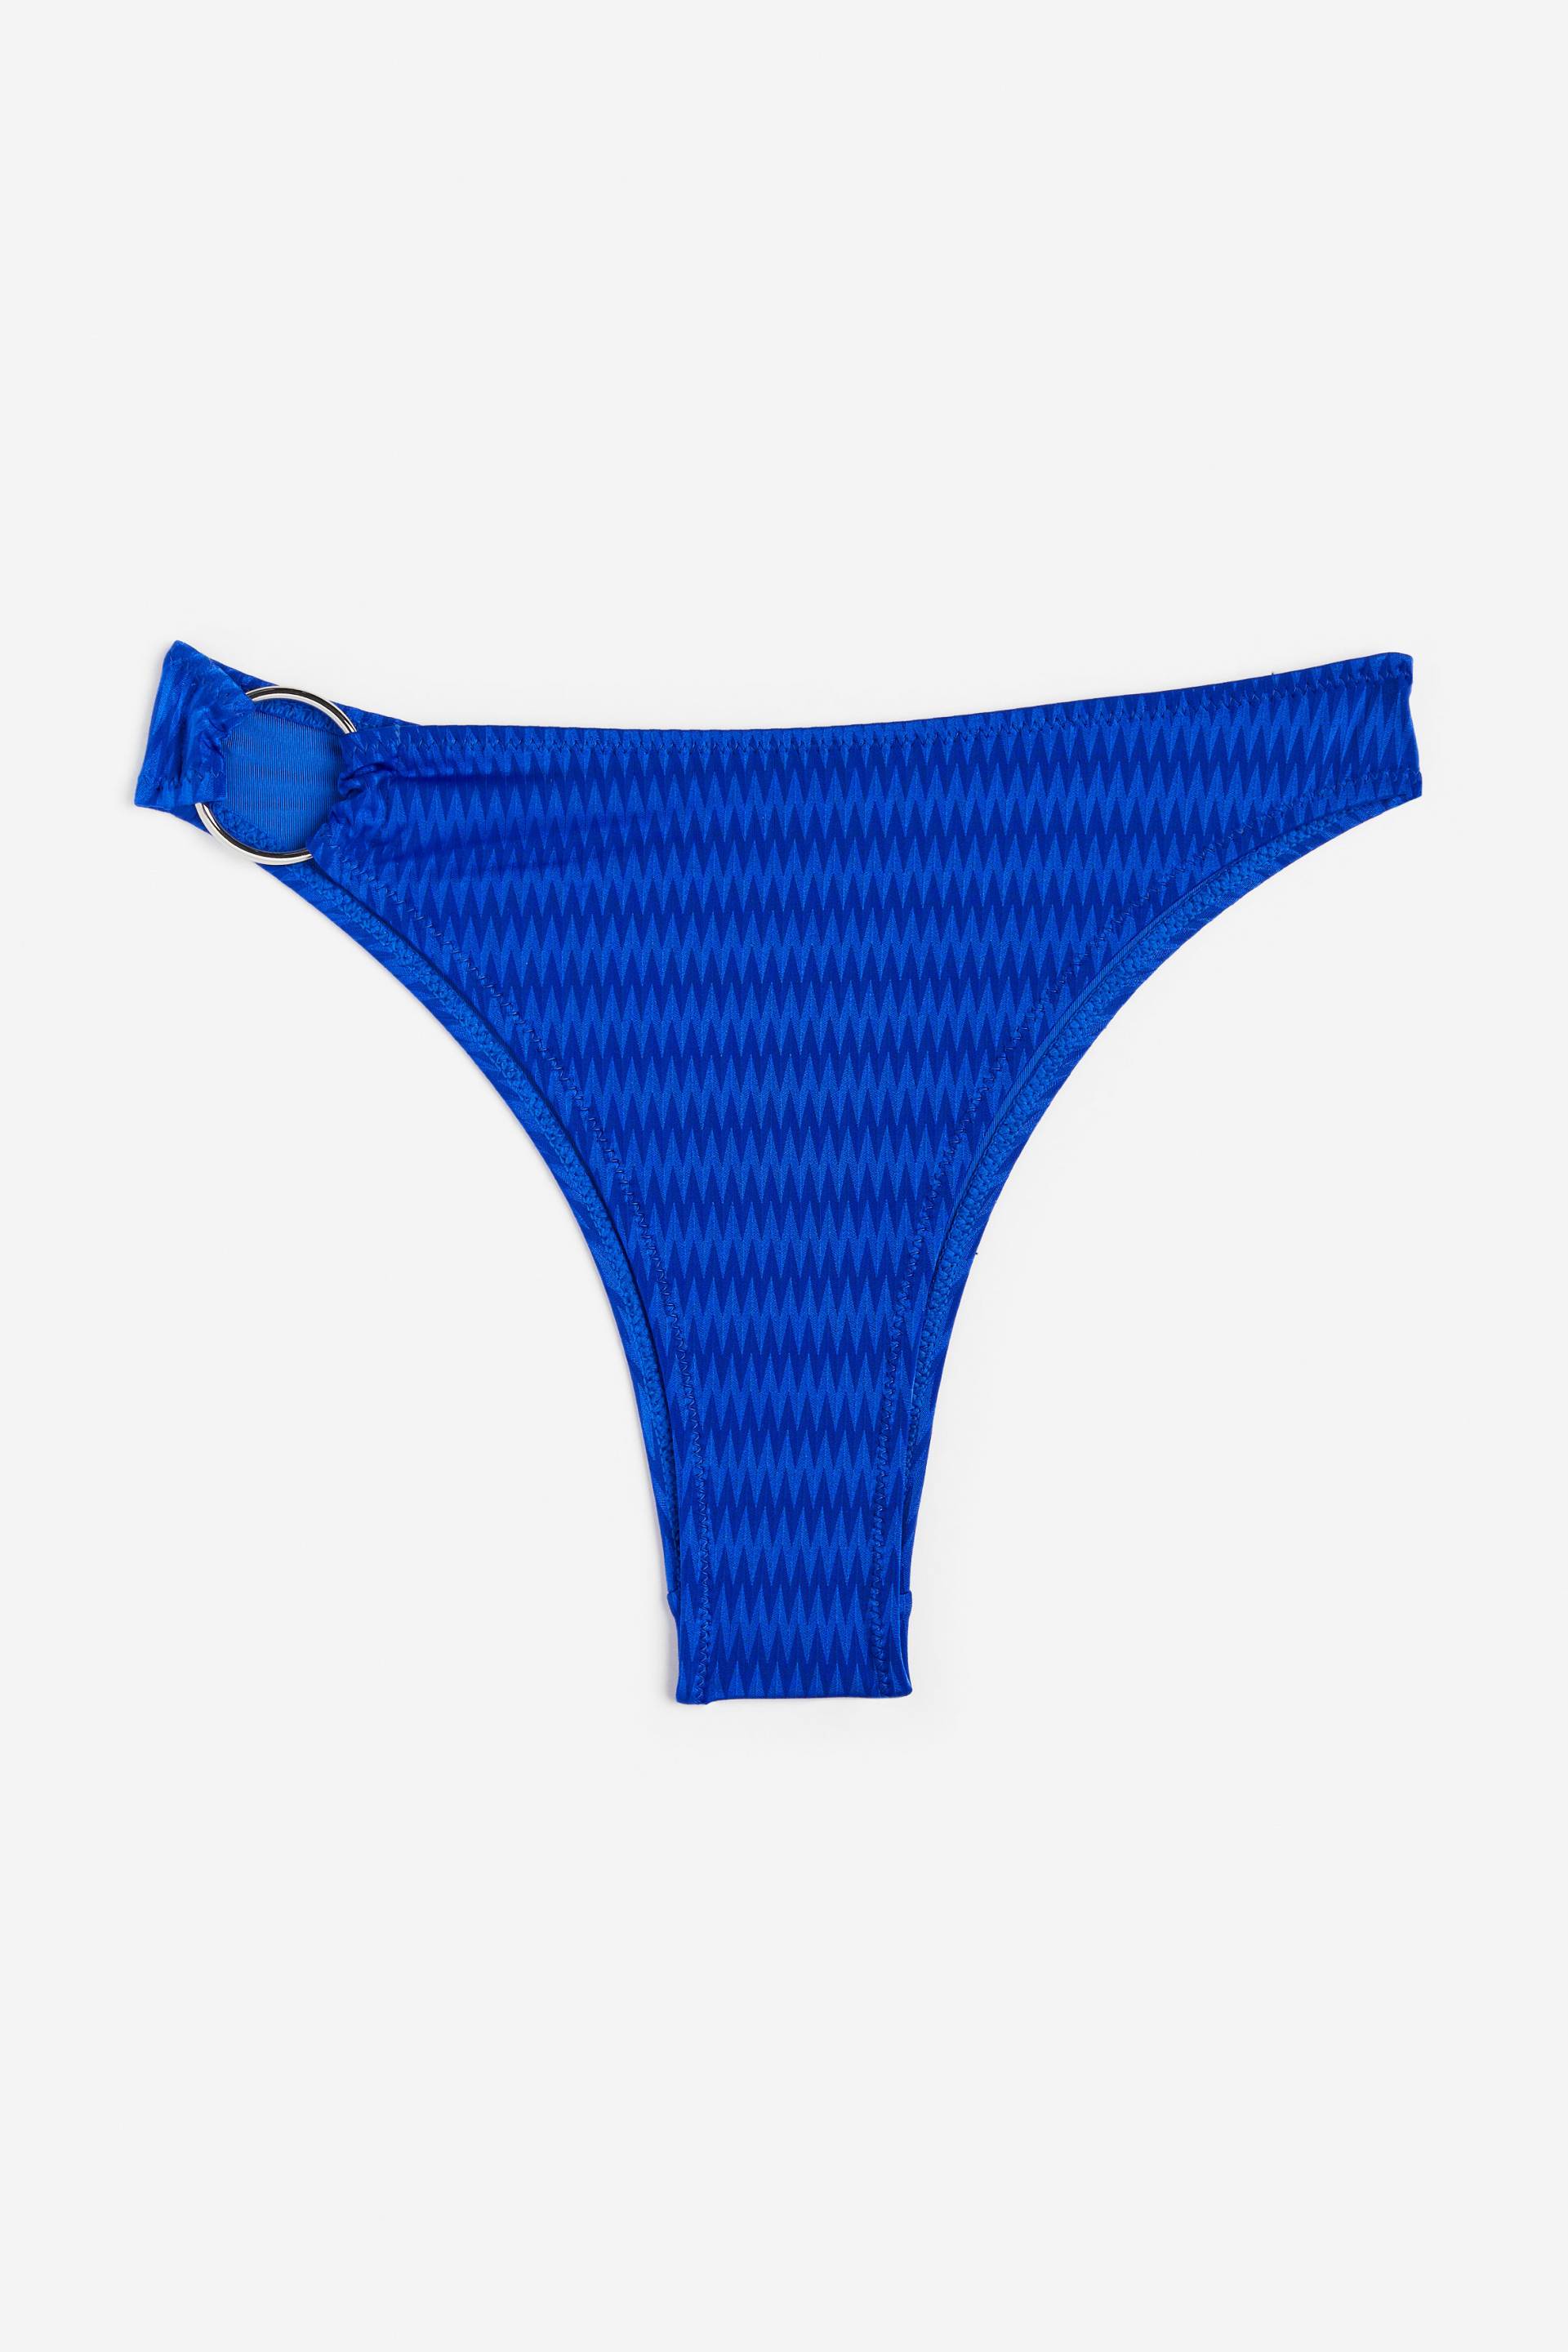 H&M Bikinihose Brazilian Knallblau, Bikini-Unterteil in Größe 44. Farbe: Bright blue von H&M